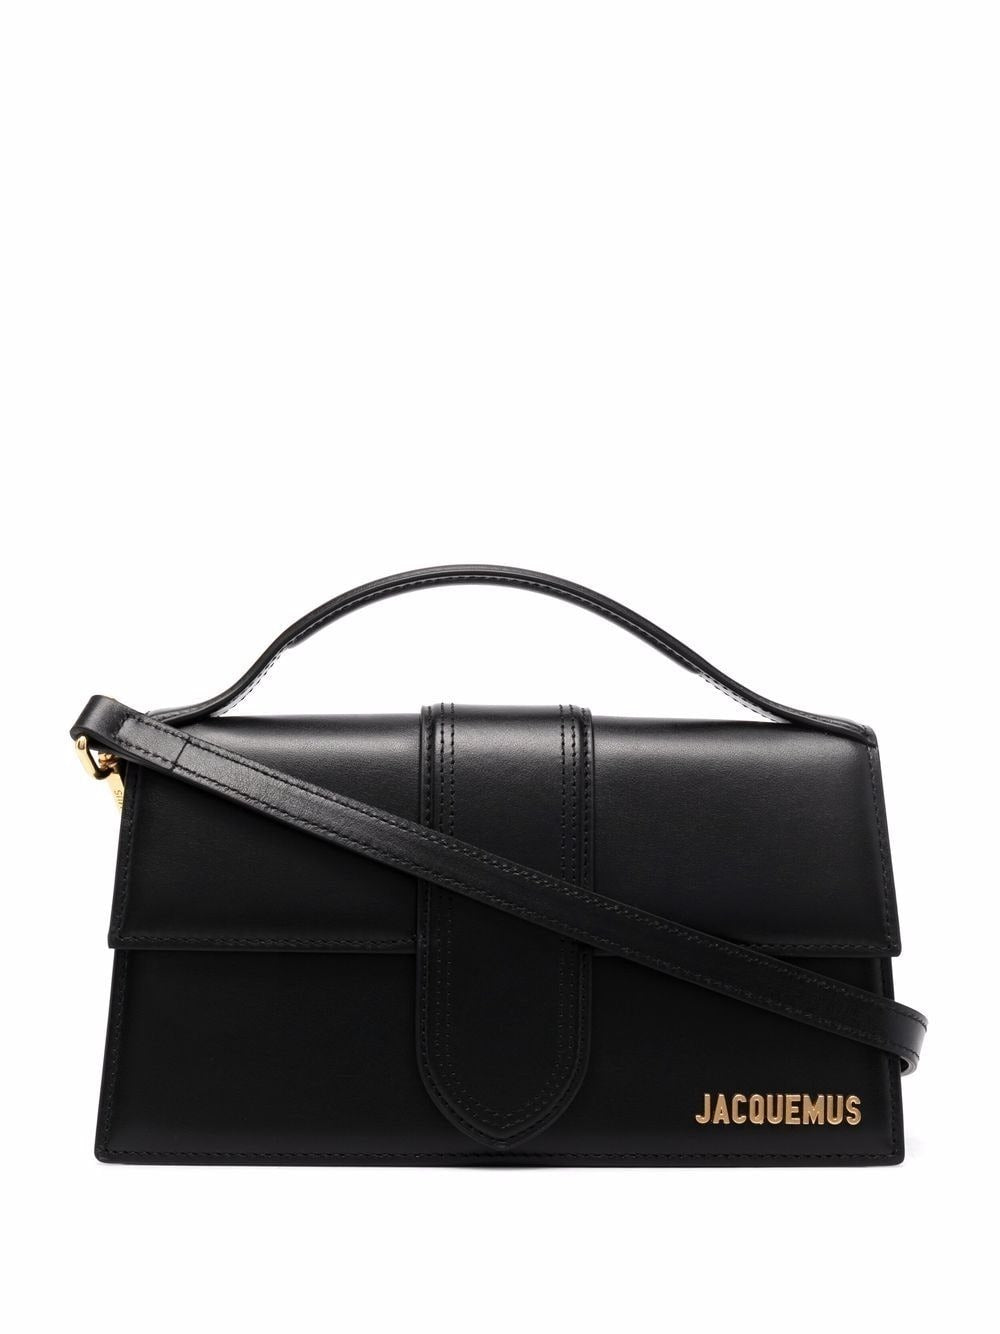 Jacquemus Le Grand Bambino Handbag in Black